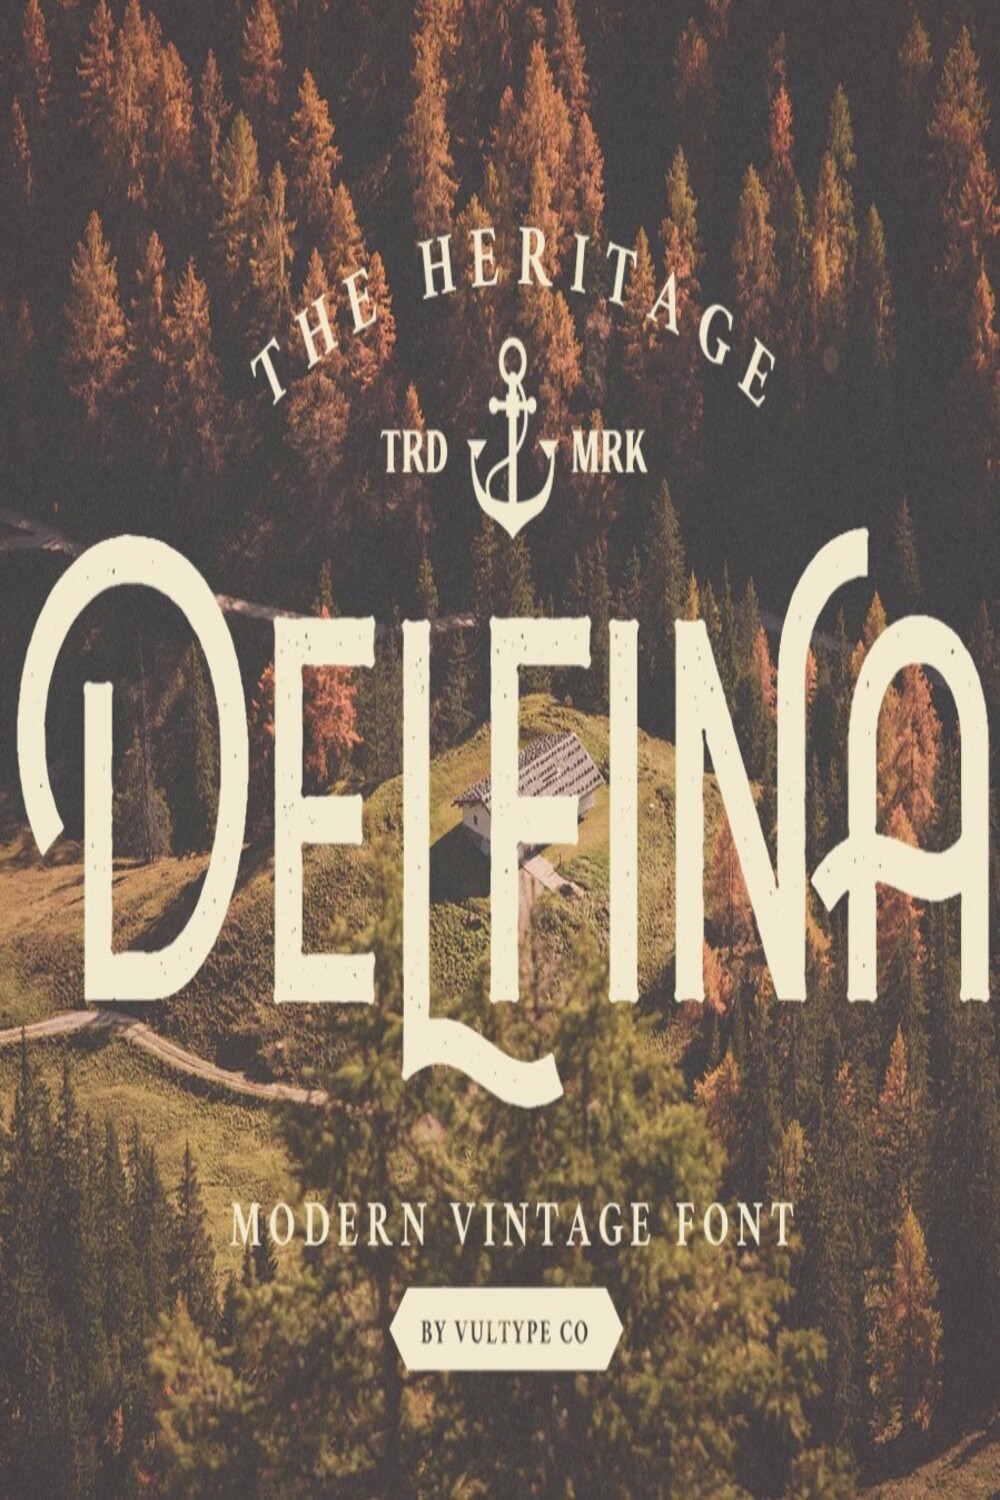 Vintage Font Delfina Modern pinterest image.